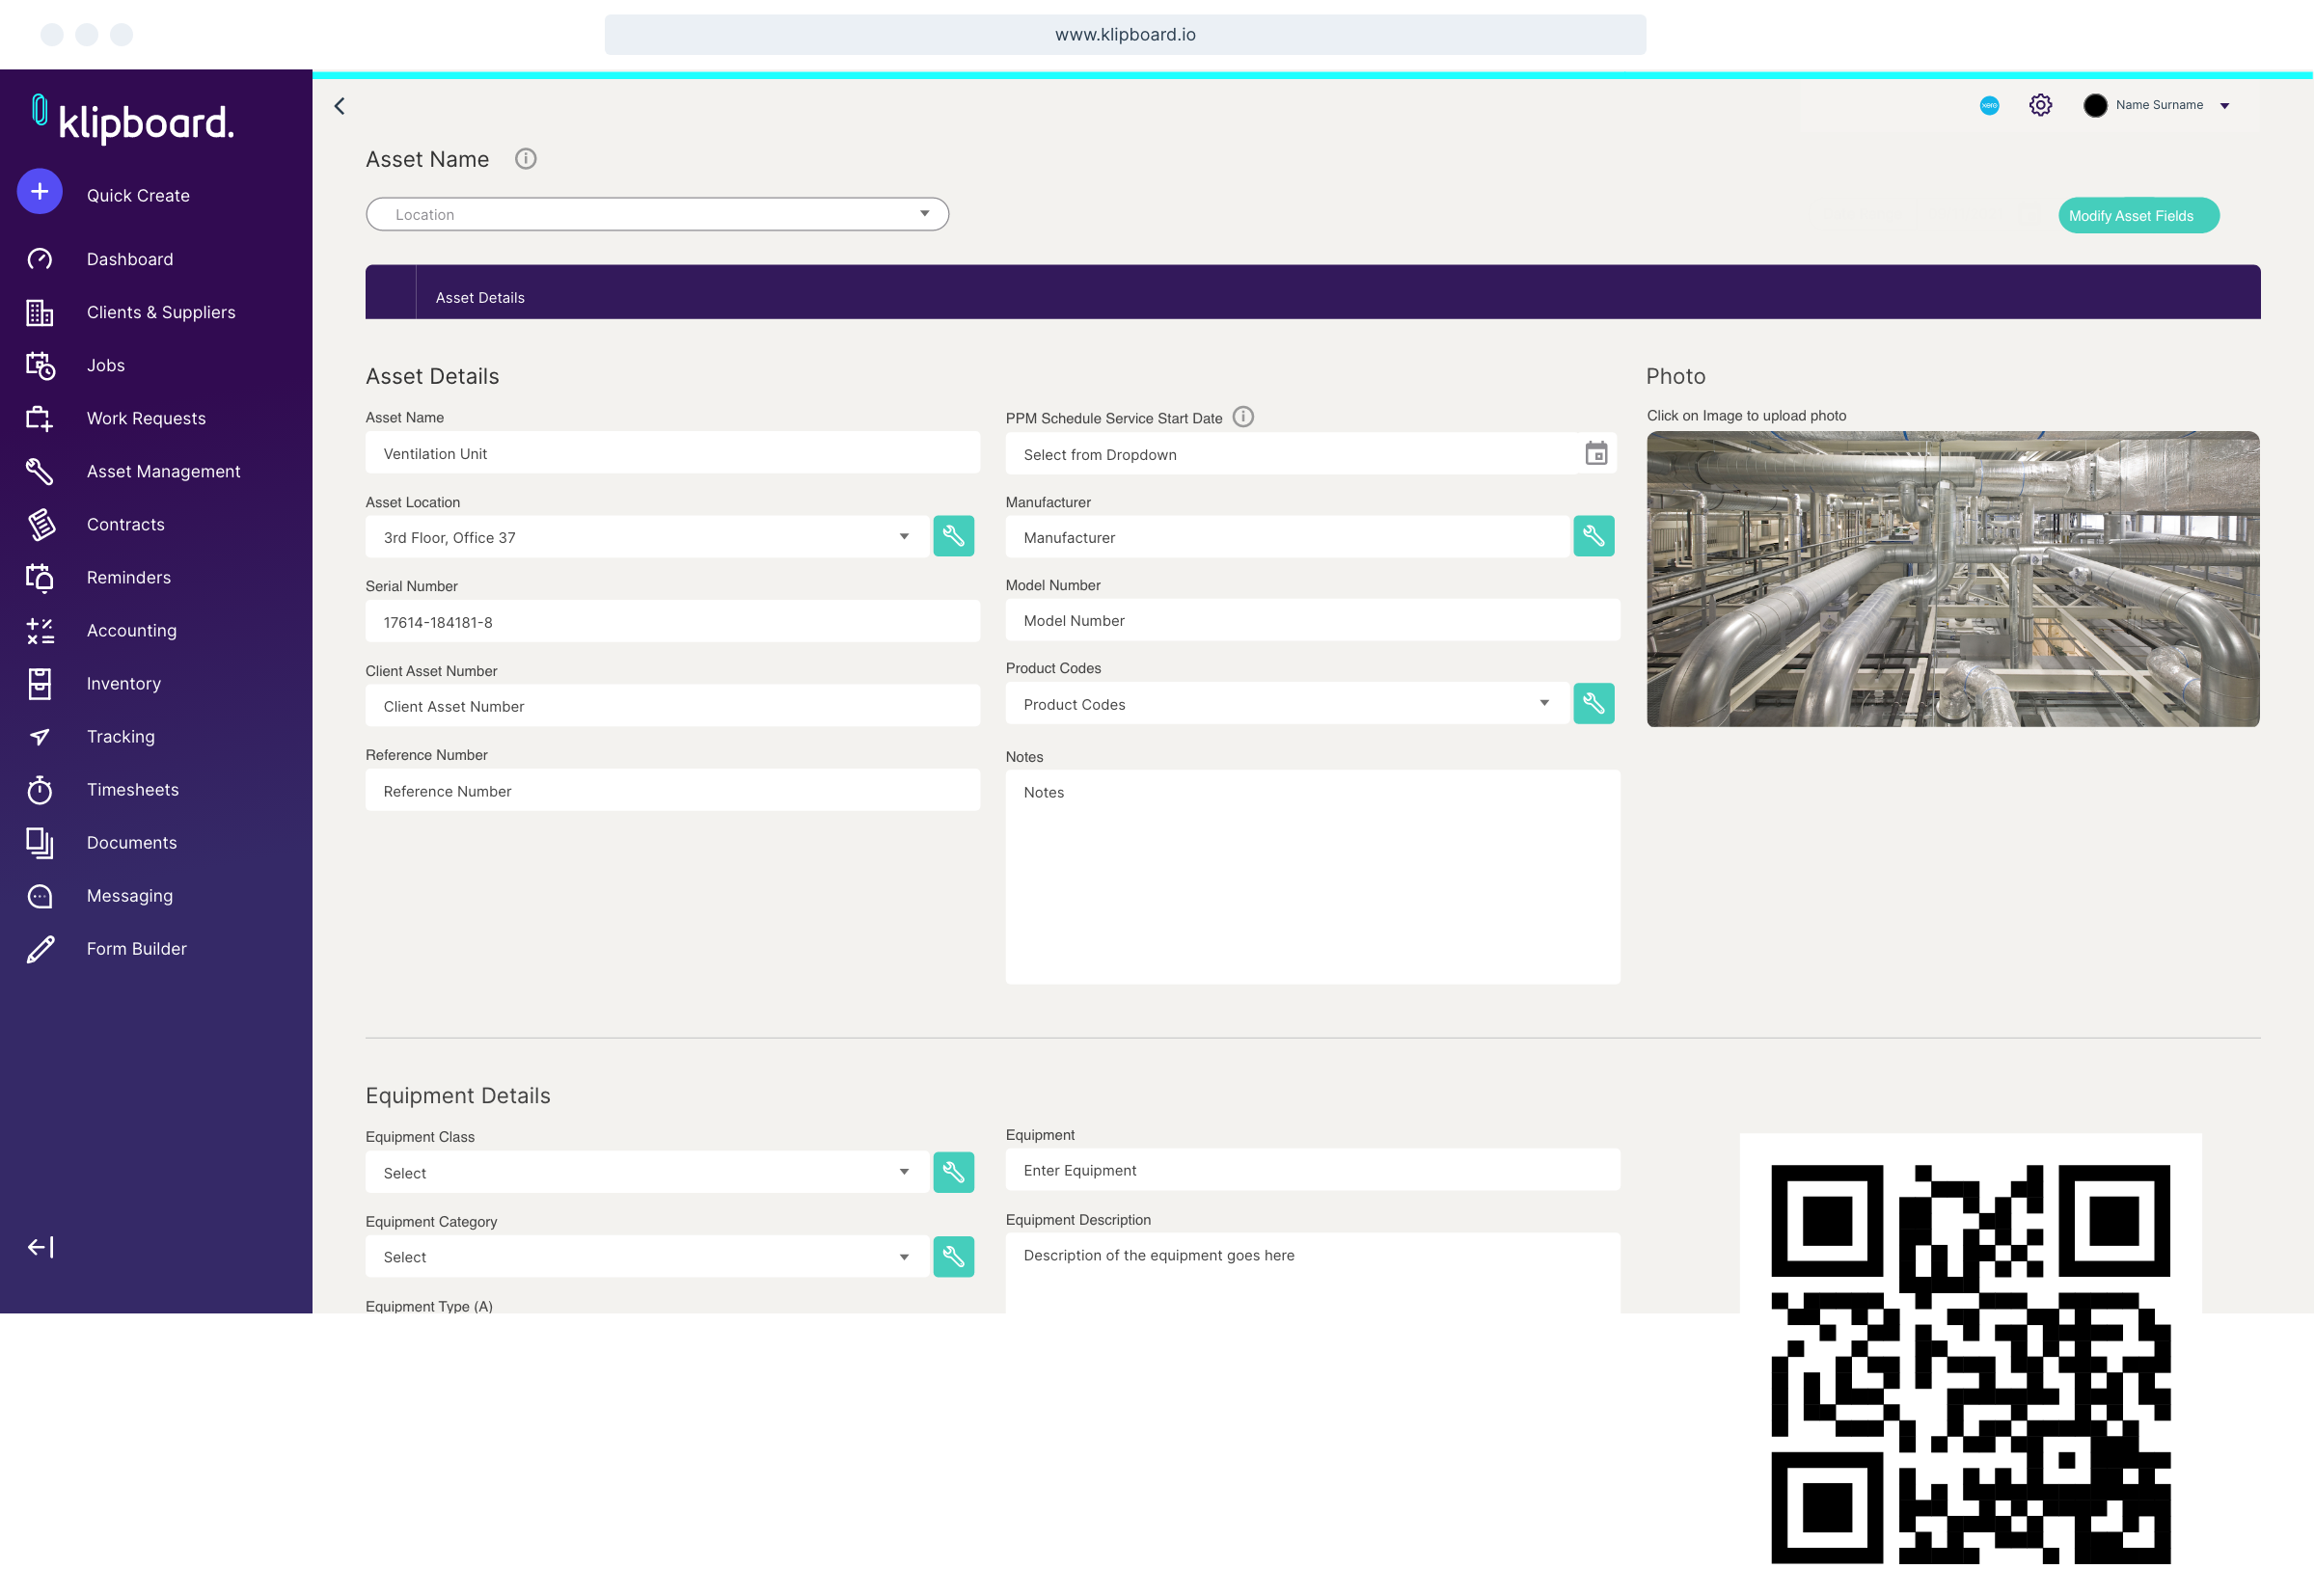 screenshot of Klipboard app from desktop create asset form